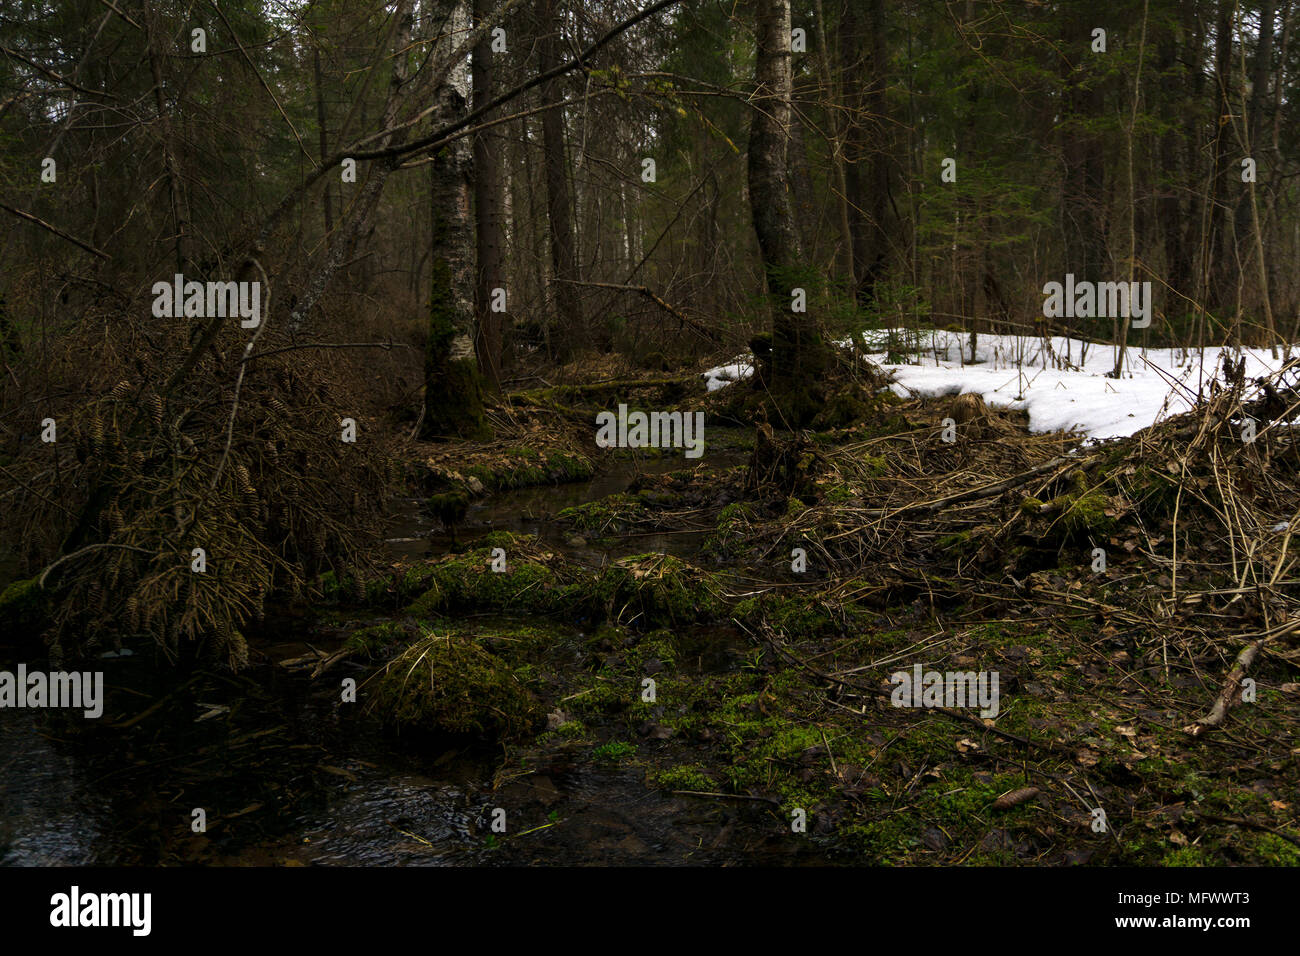 Les fourrés marécageux mixtes de conifères de la forêt boréale climat durant la fonte des neiges au début du printemps Banque D'Images